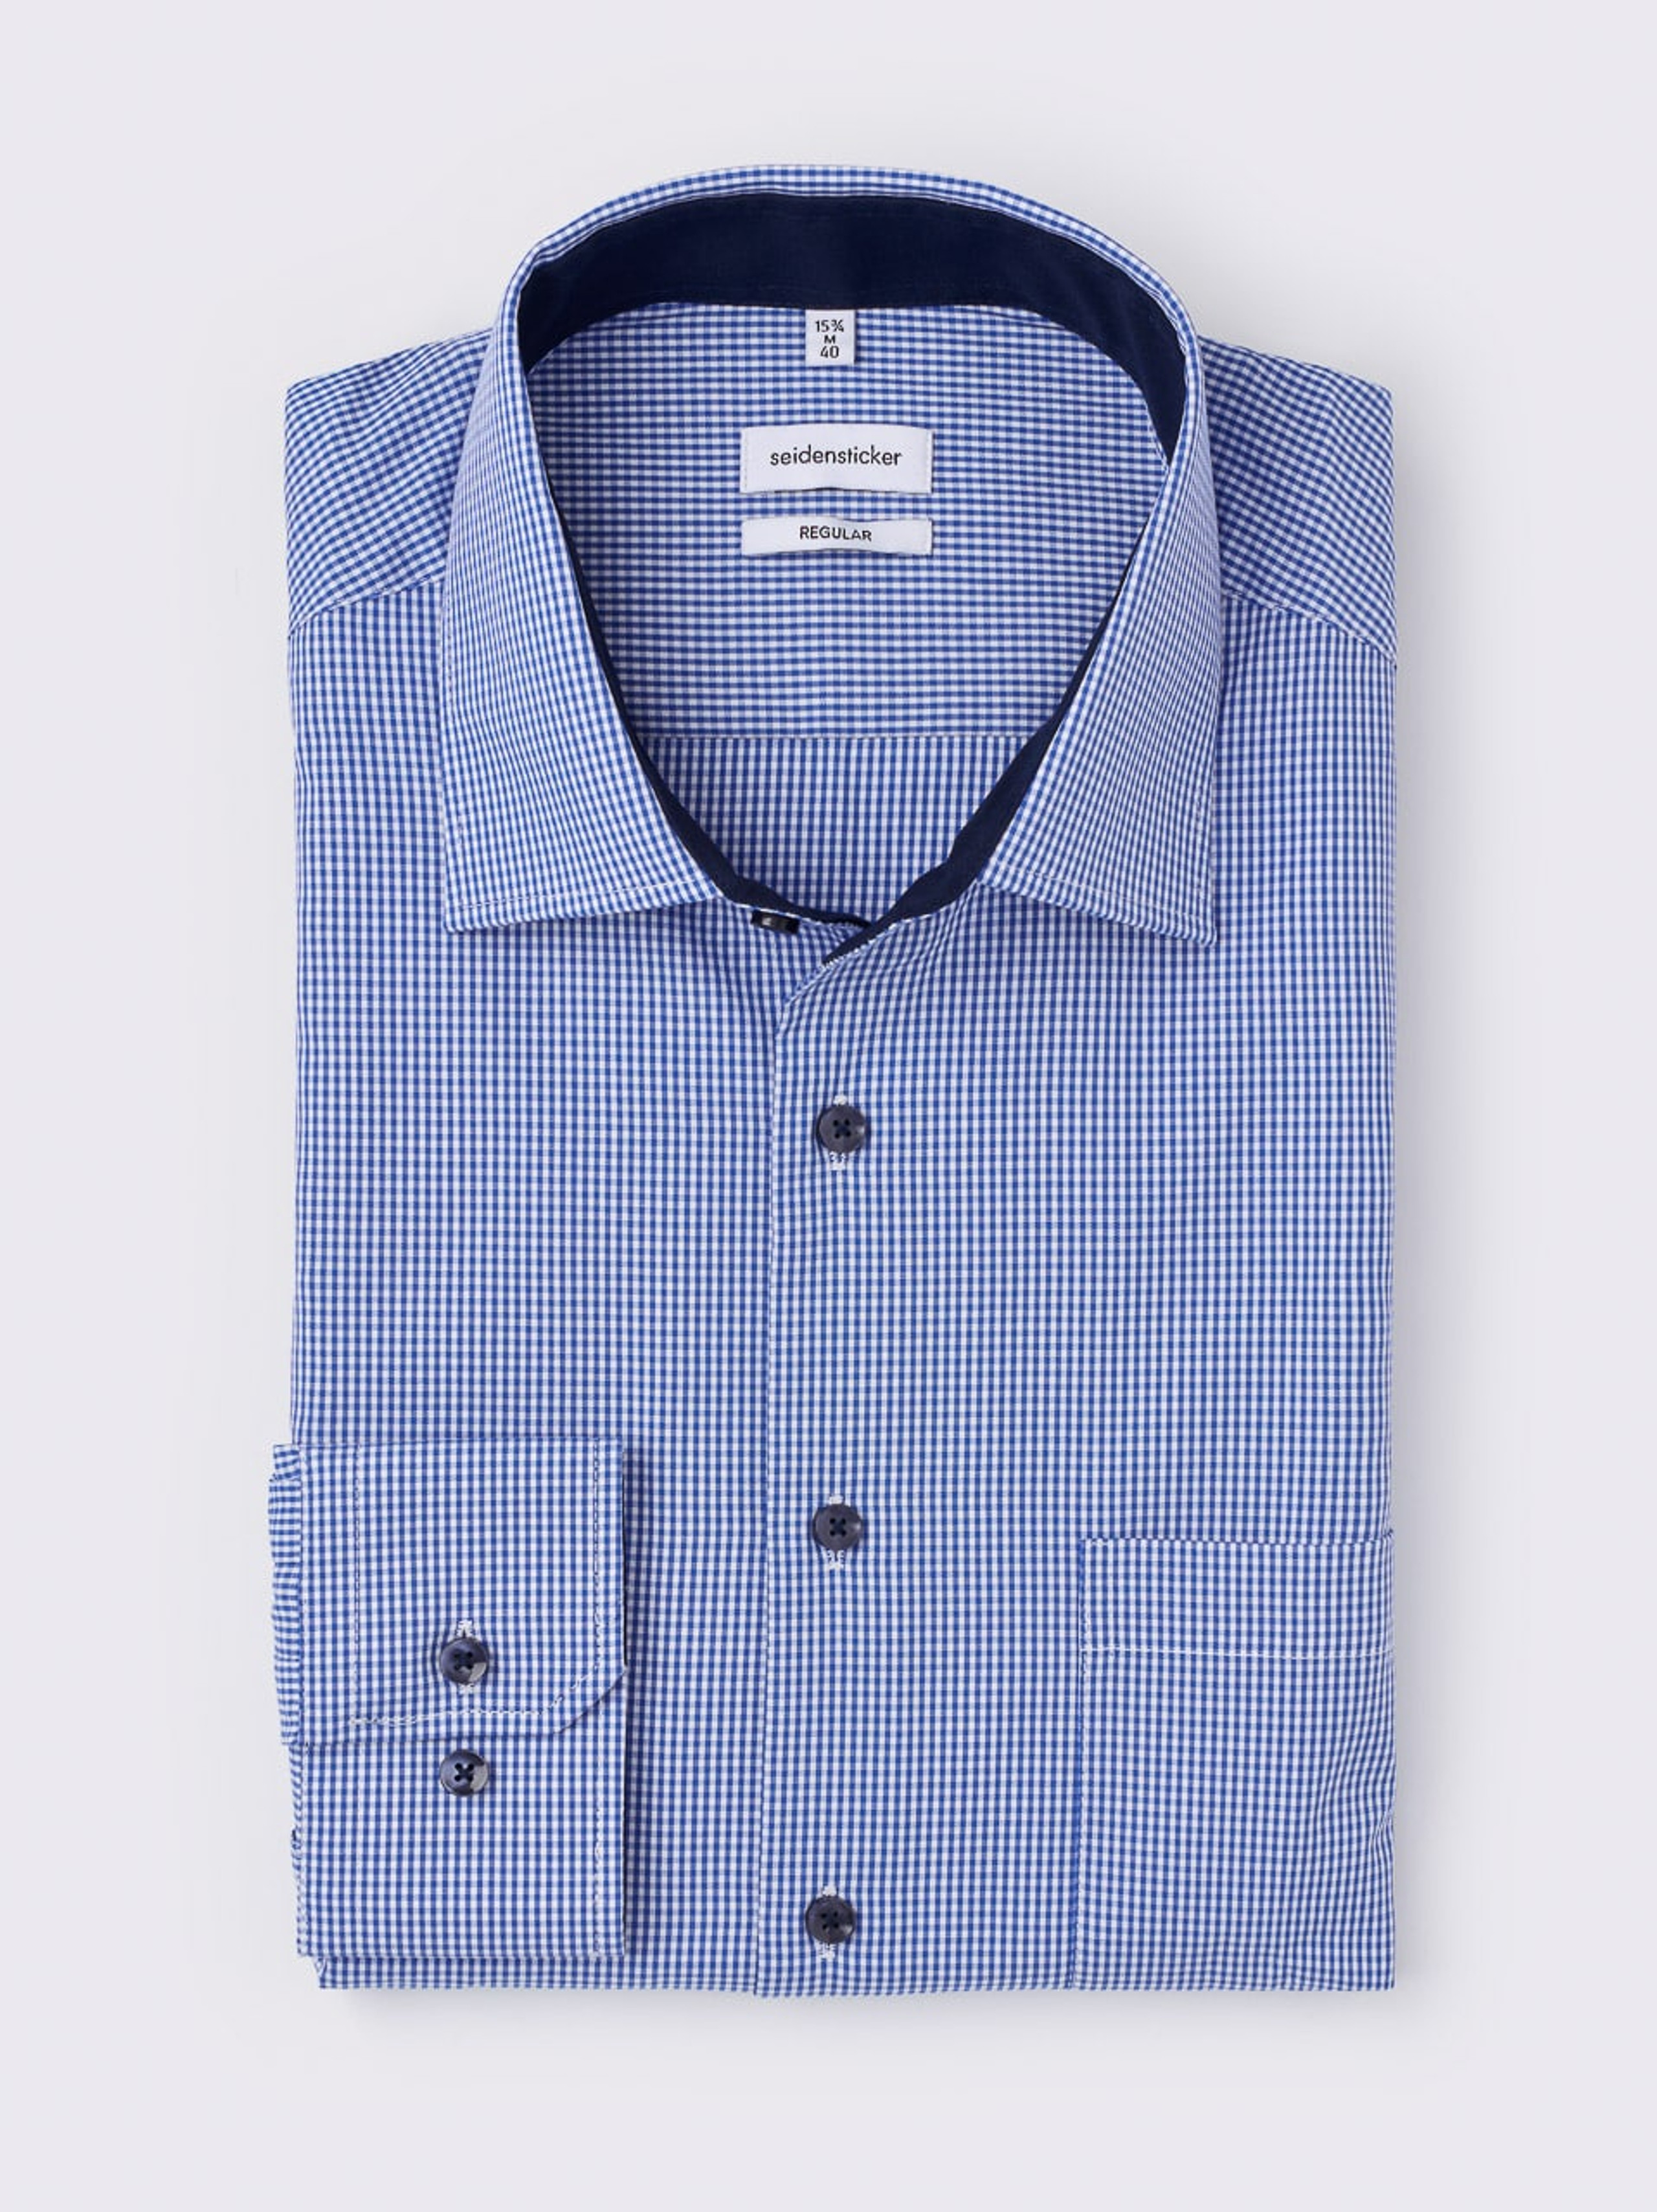 Seidensticker Check Long Sleeve Non-Iron Cotton Shirt | Peter Christian